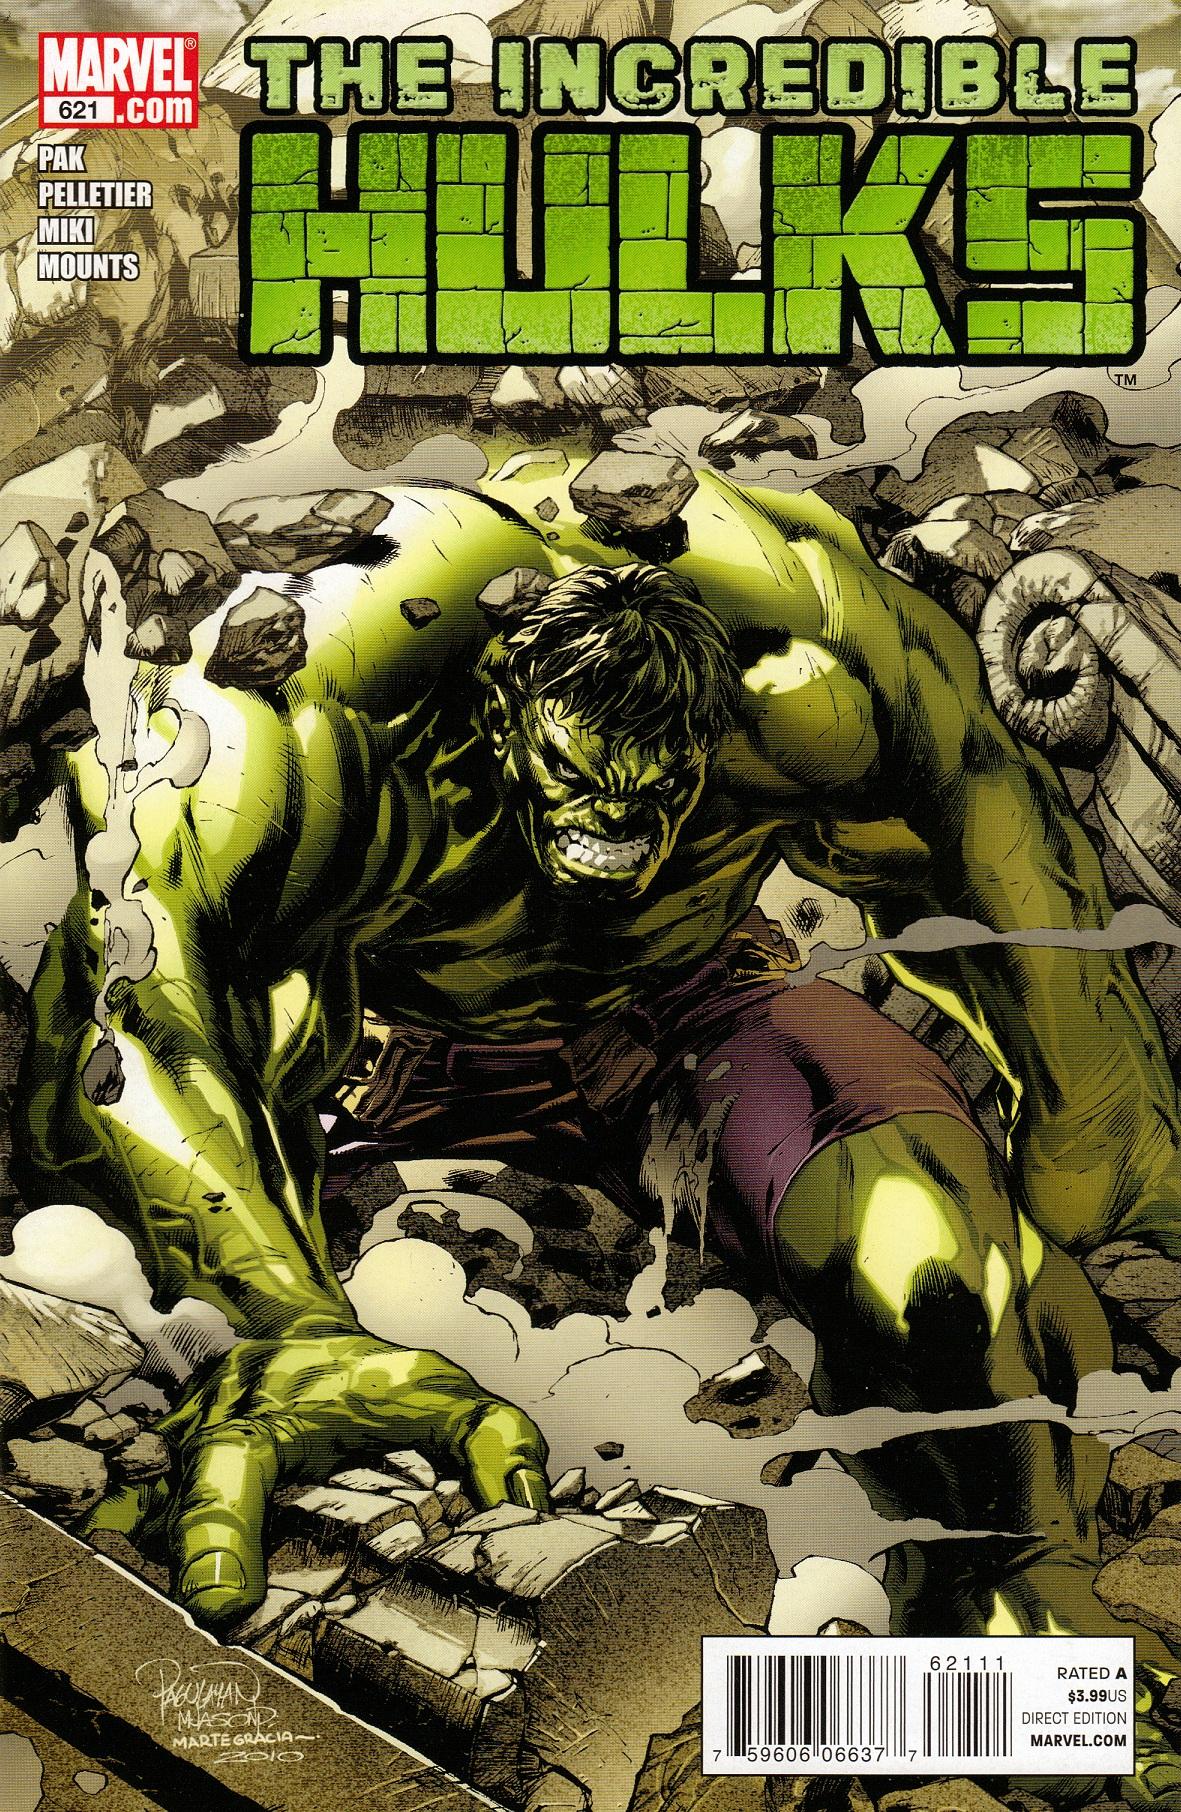 Incredible Hulks Vol. 1 #621